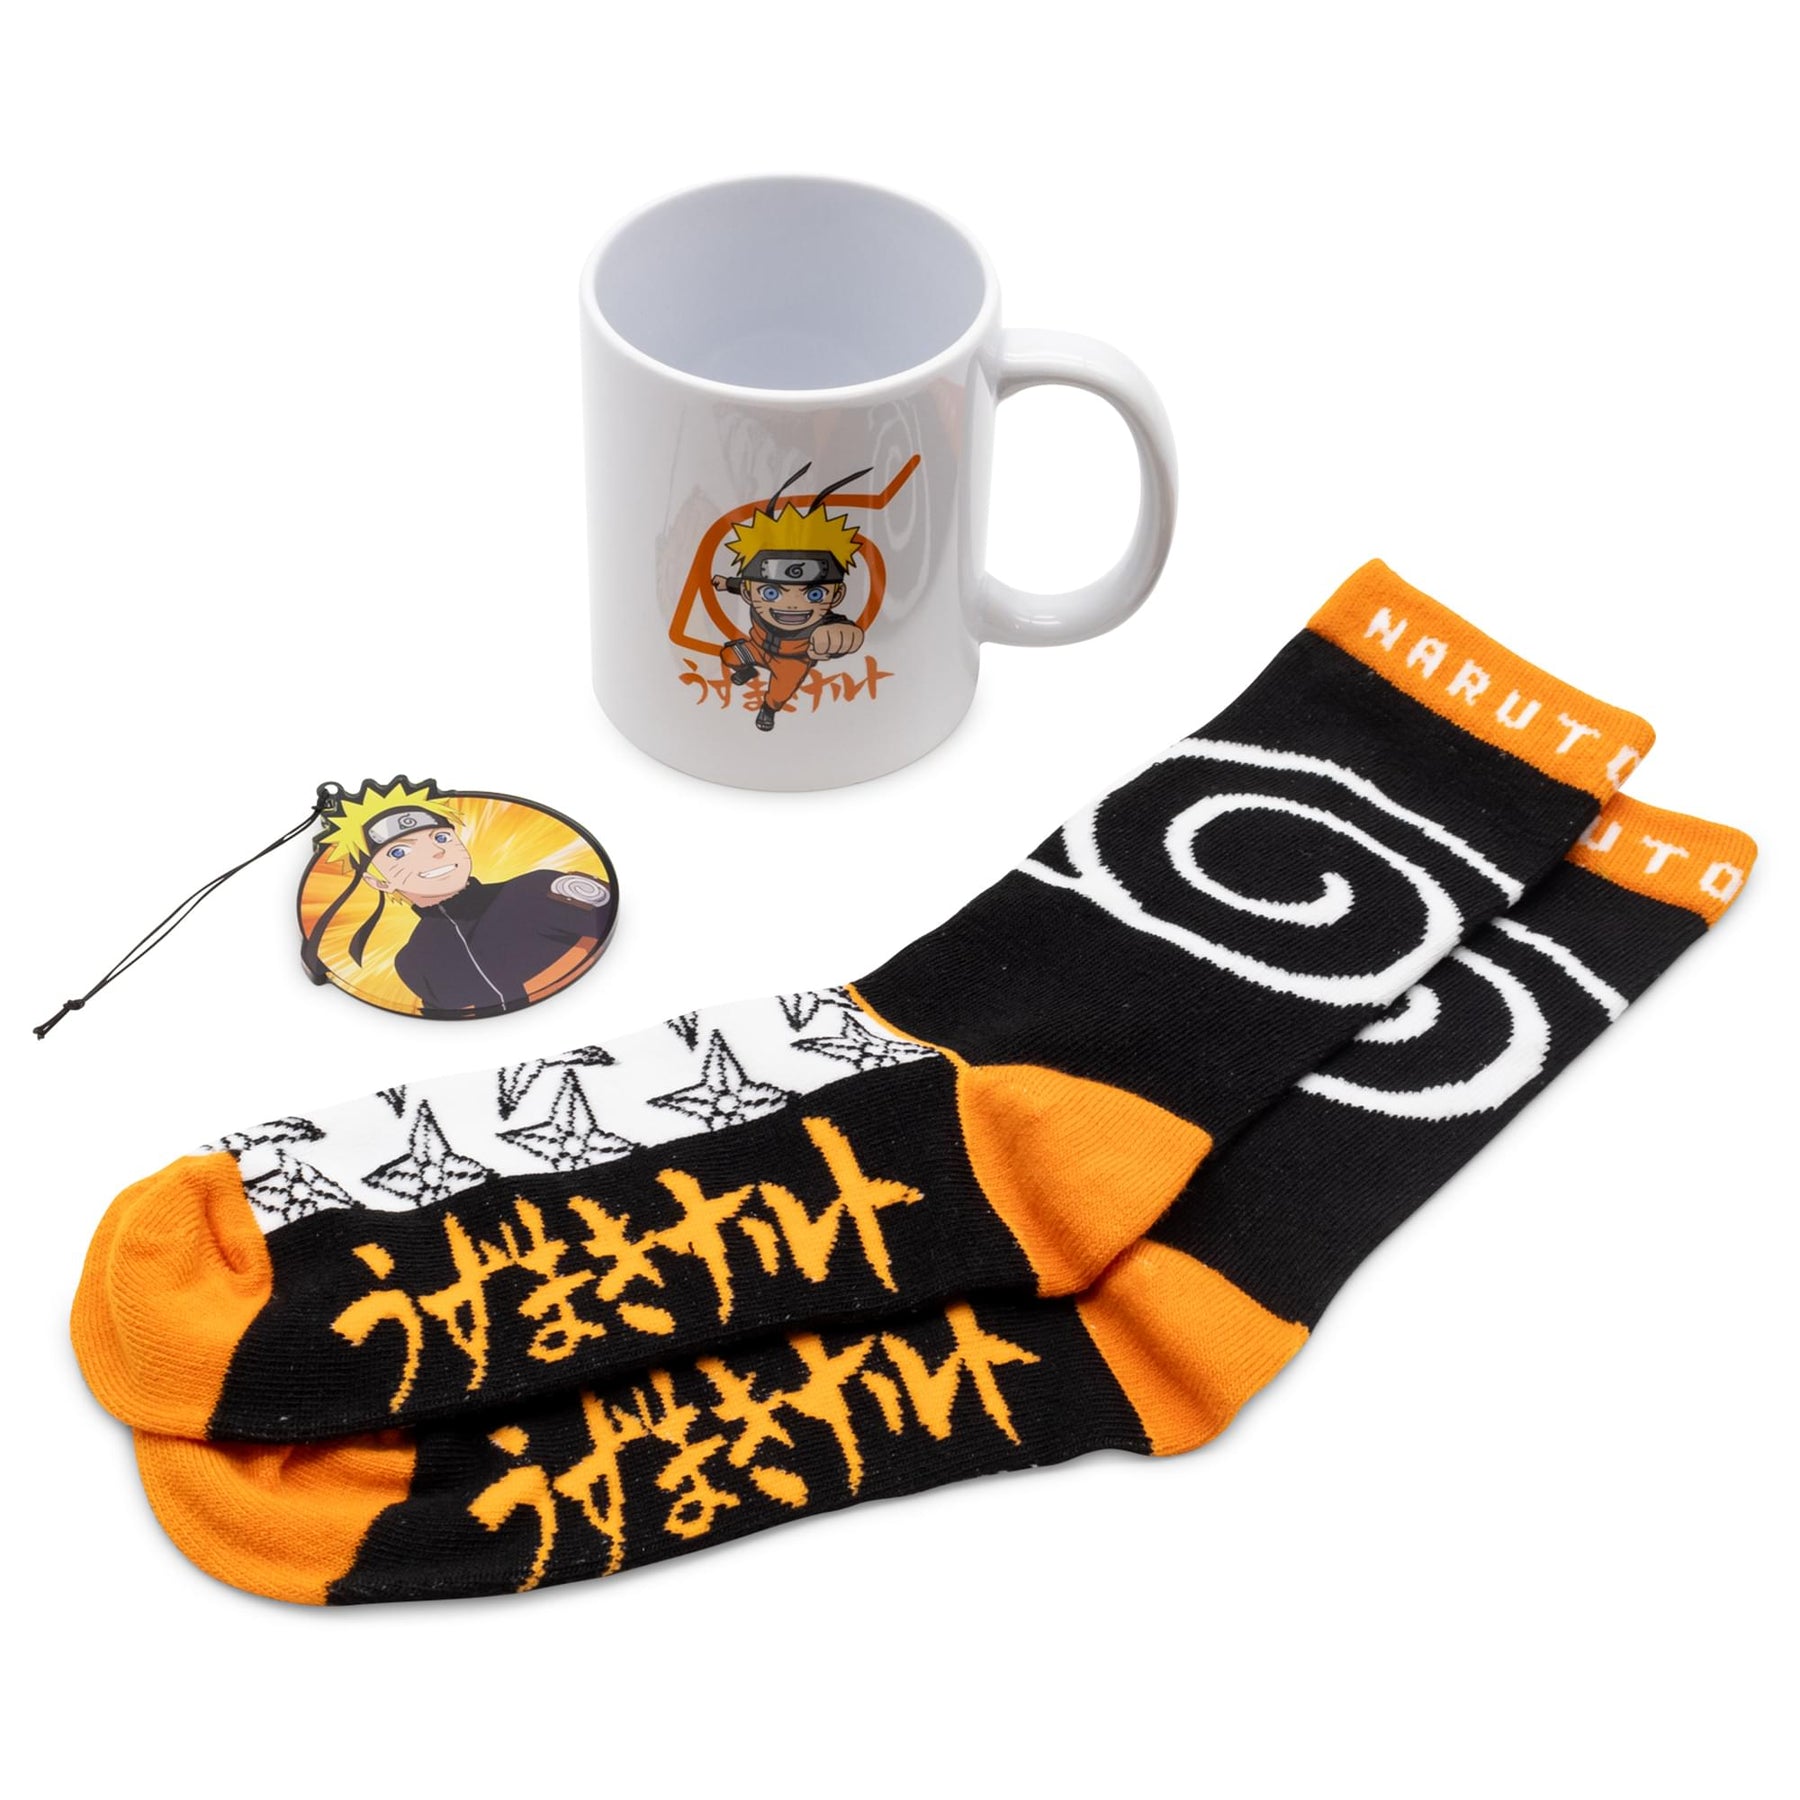 Naruto Shippuden Mug, Socks, and Ornament Bundle